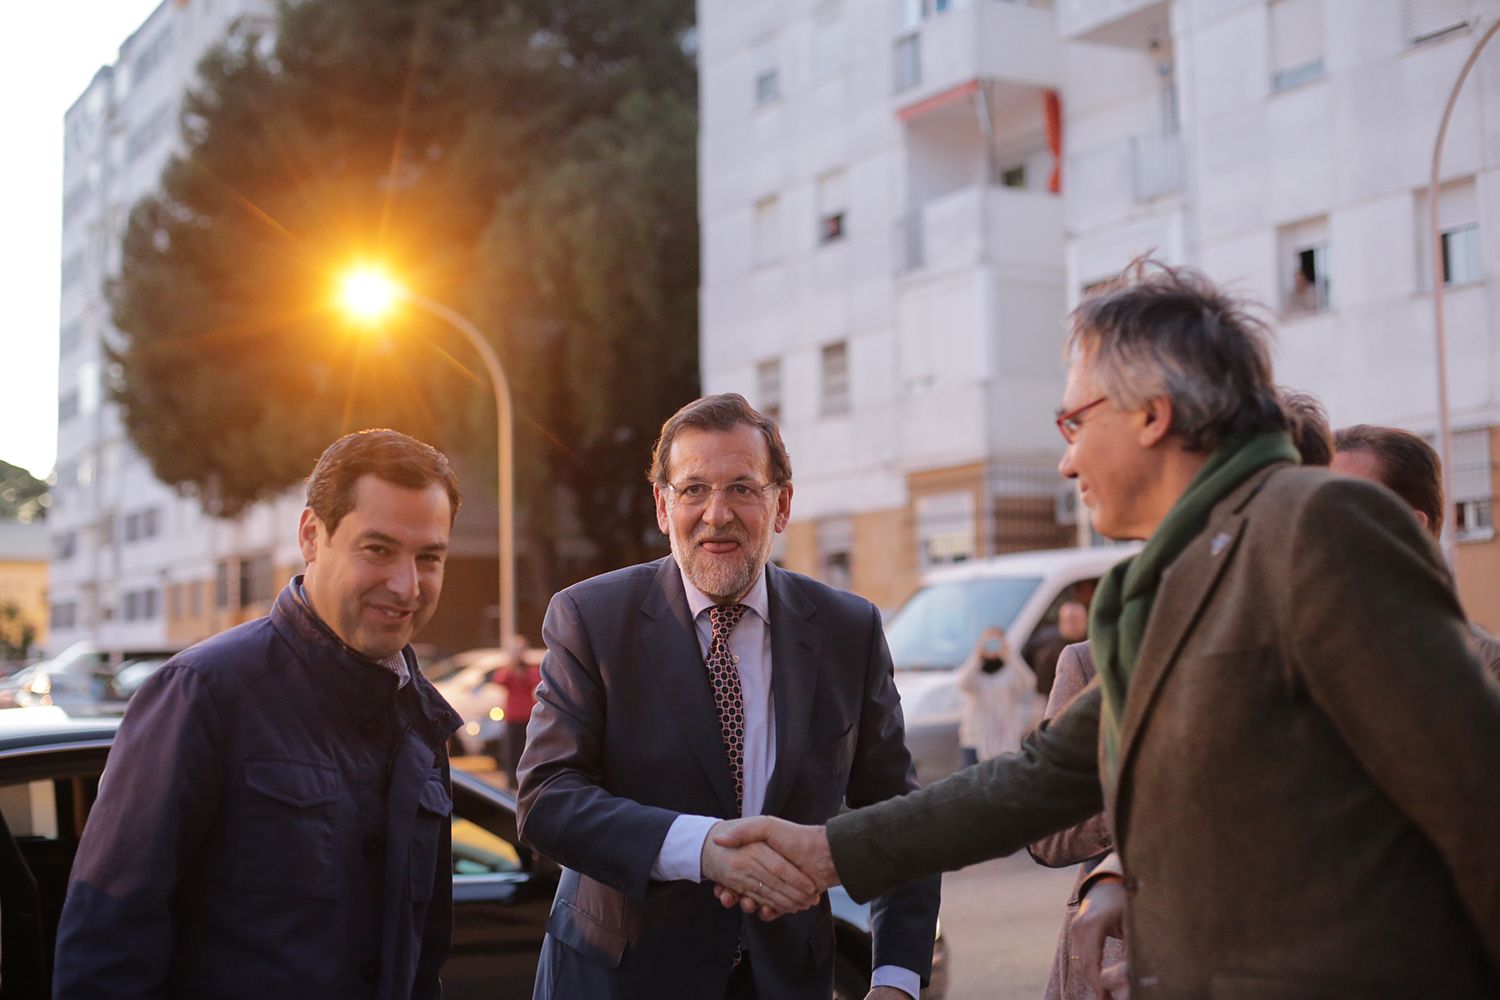 Mitin PP - Mariano Rajoy.jpg